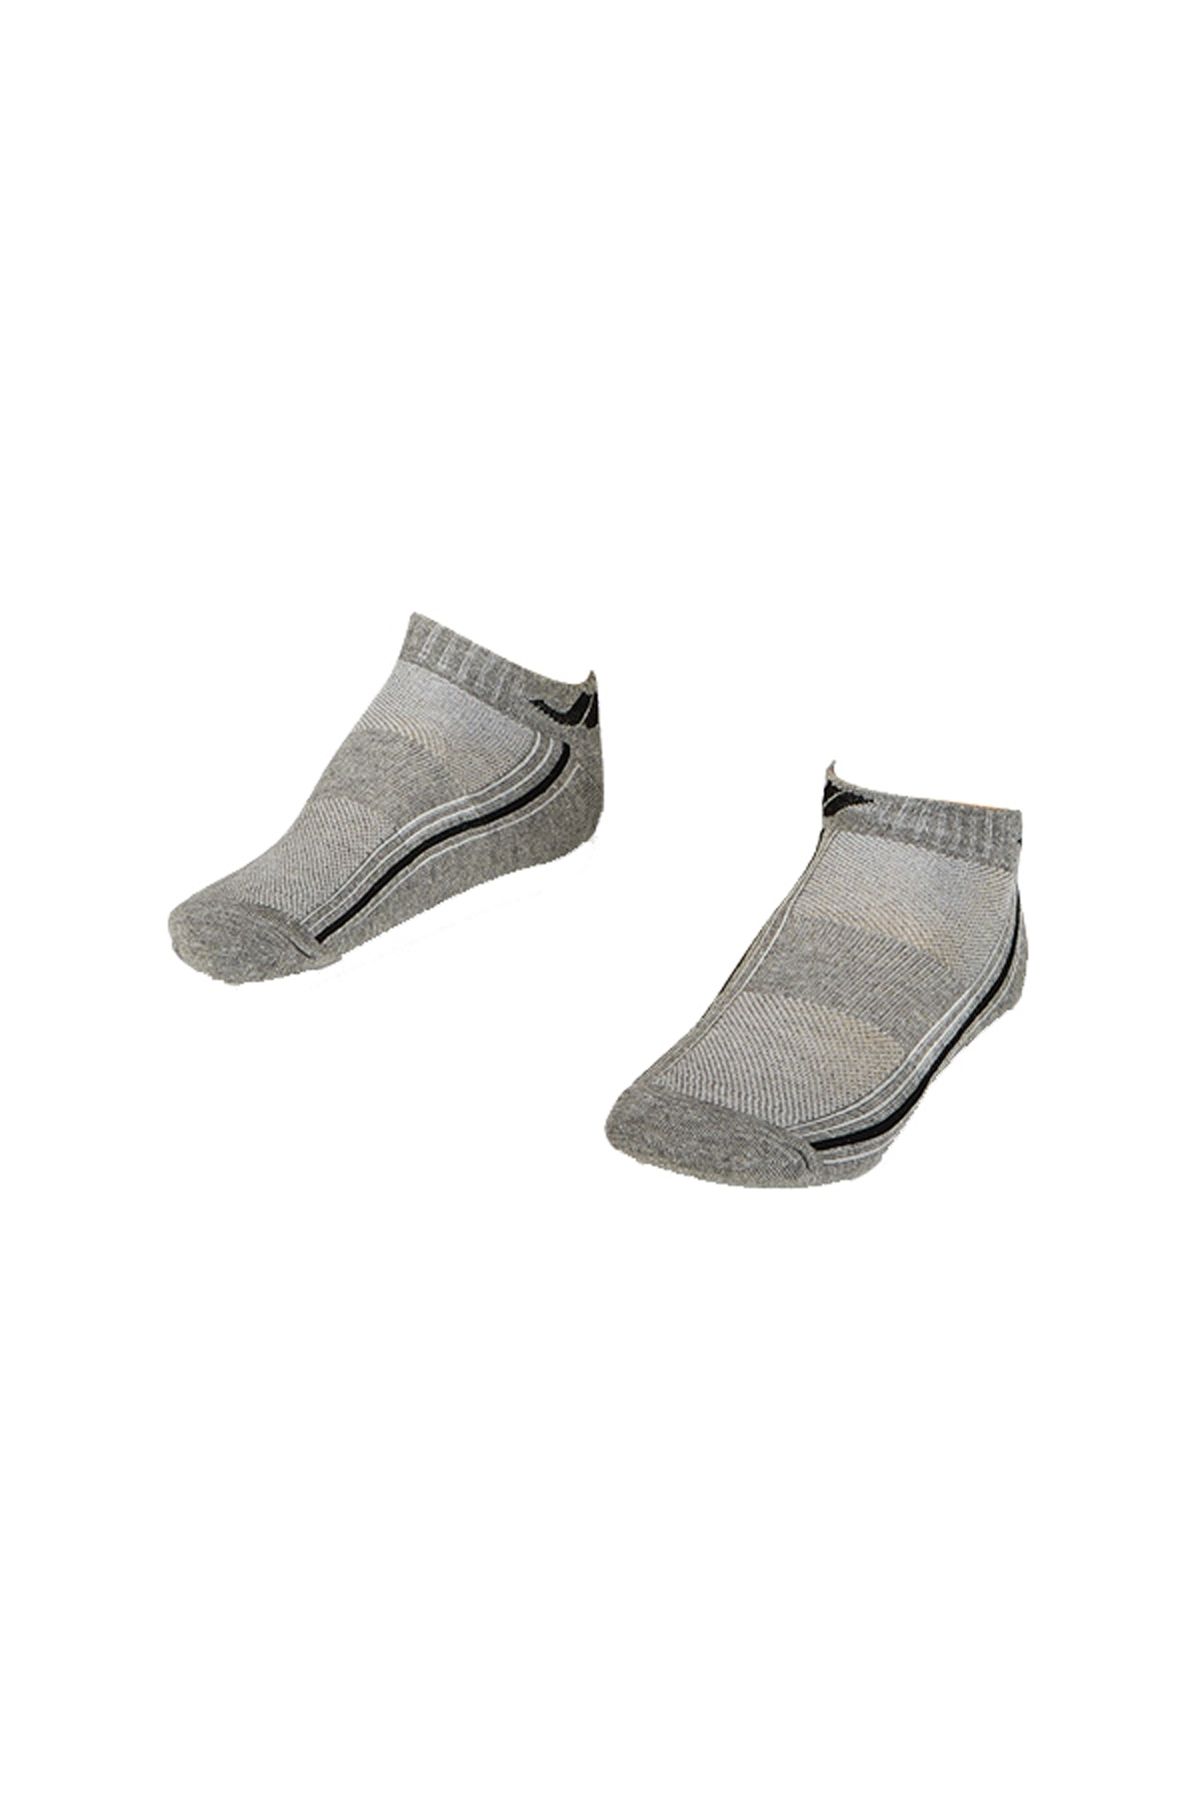 Lescon La-2194 Tekli Patik Çorap 40-45 Numara